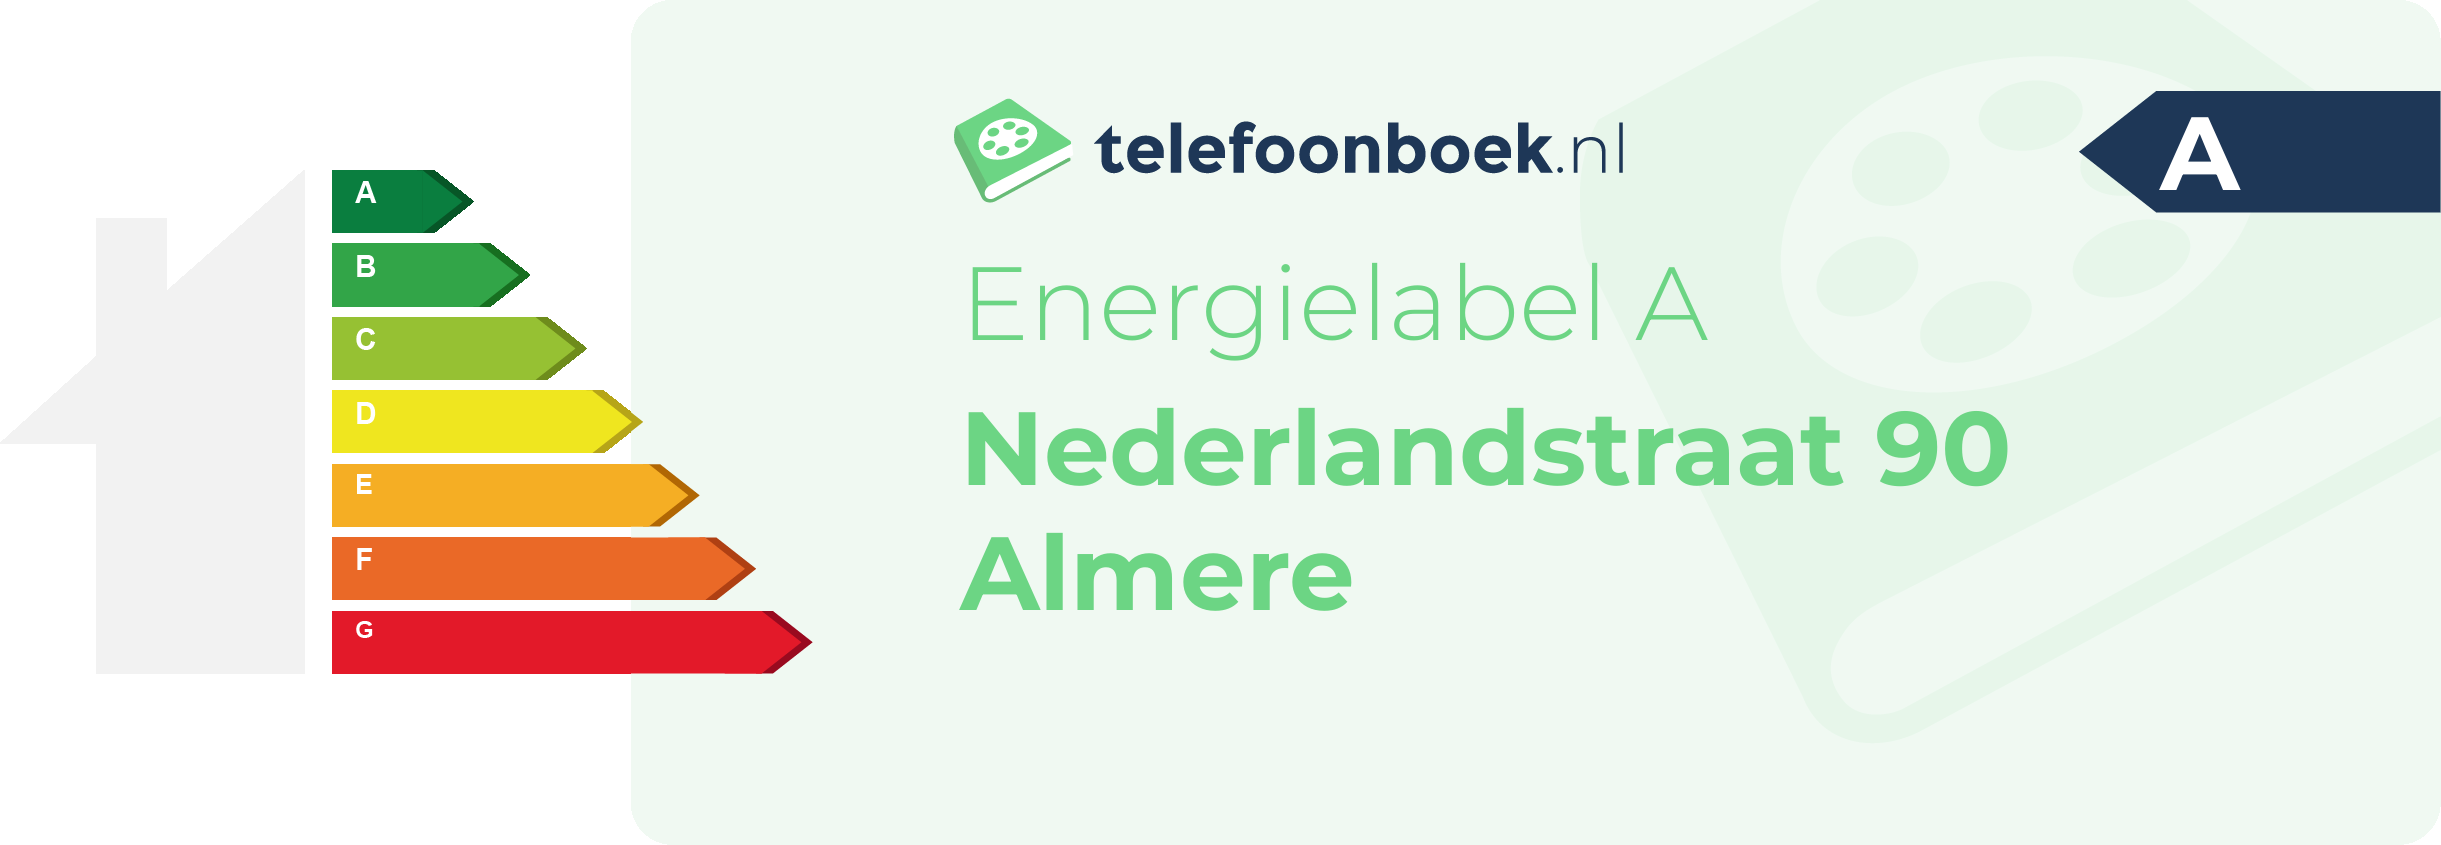 Energielabel Nederlandstraat 90 Almere